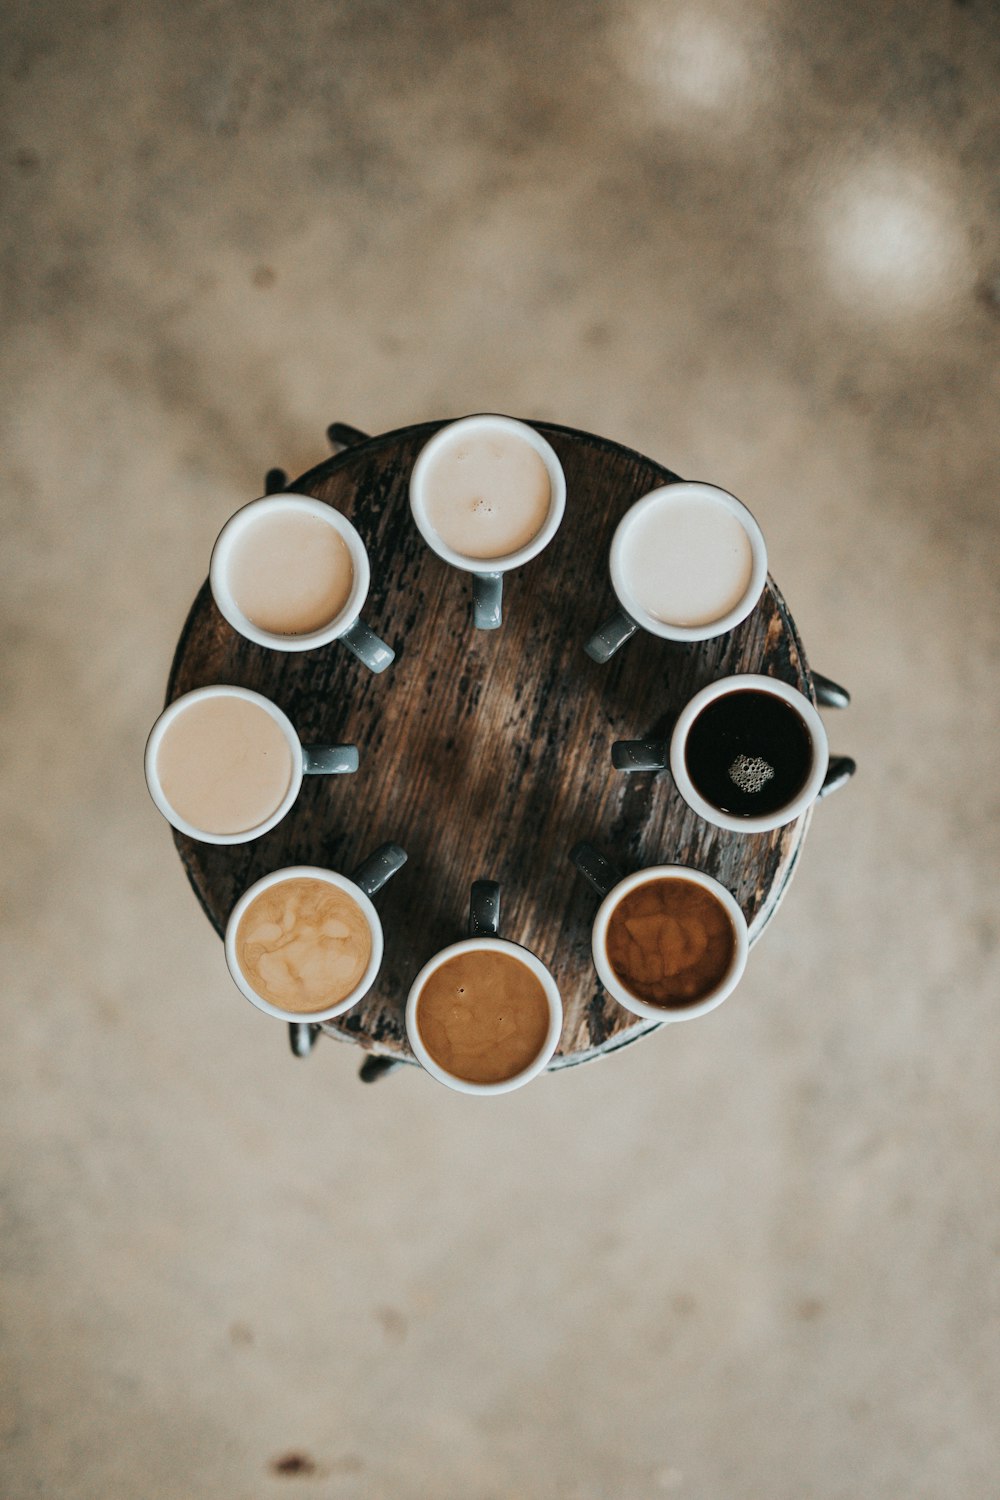 Photographie à plat de huit cafés au lait dans des tasses sur une table ronde